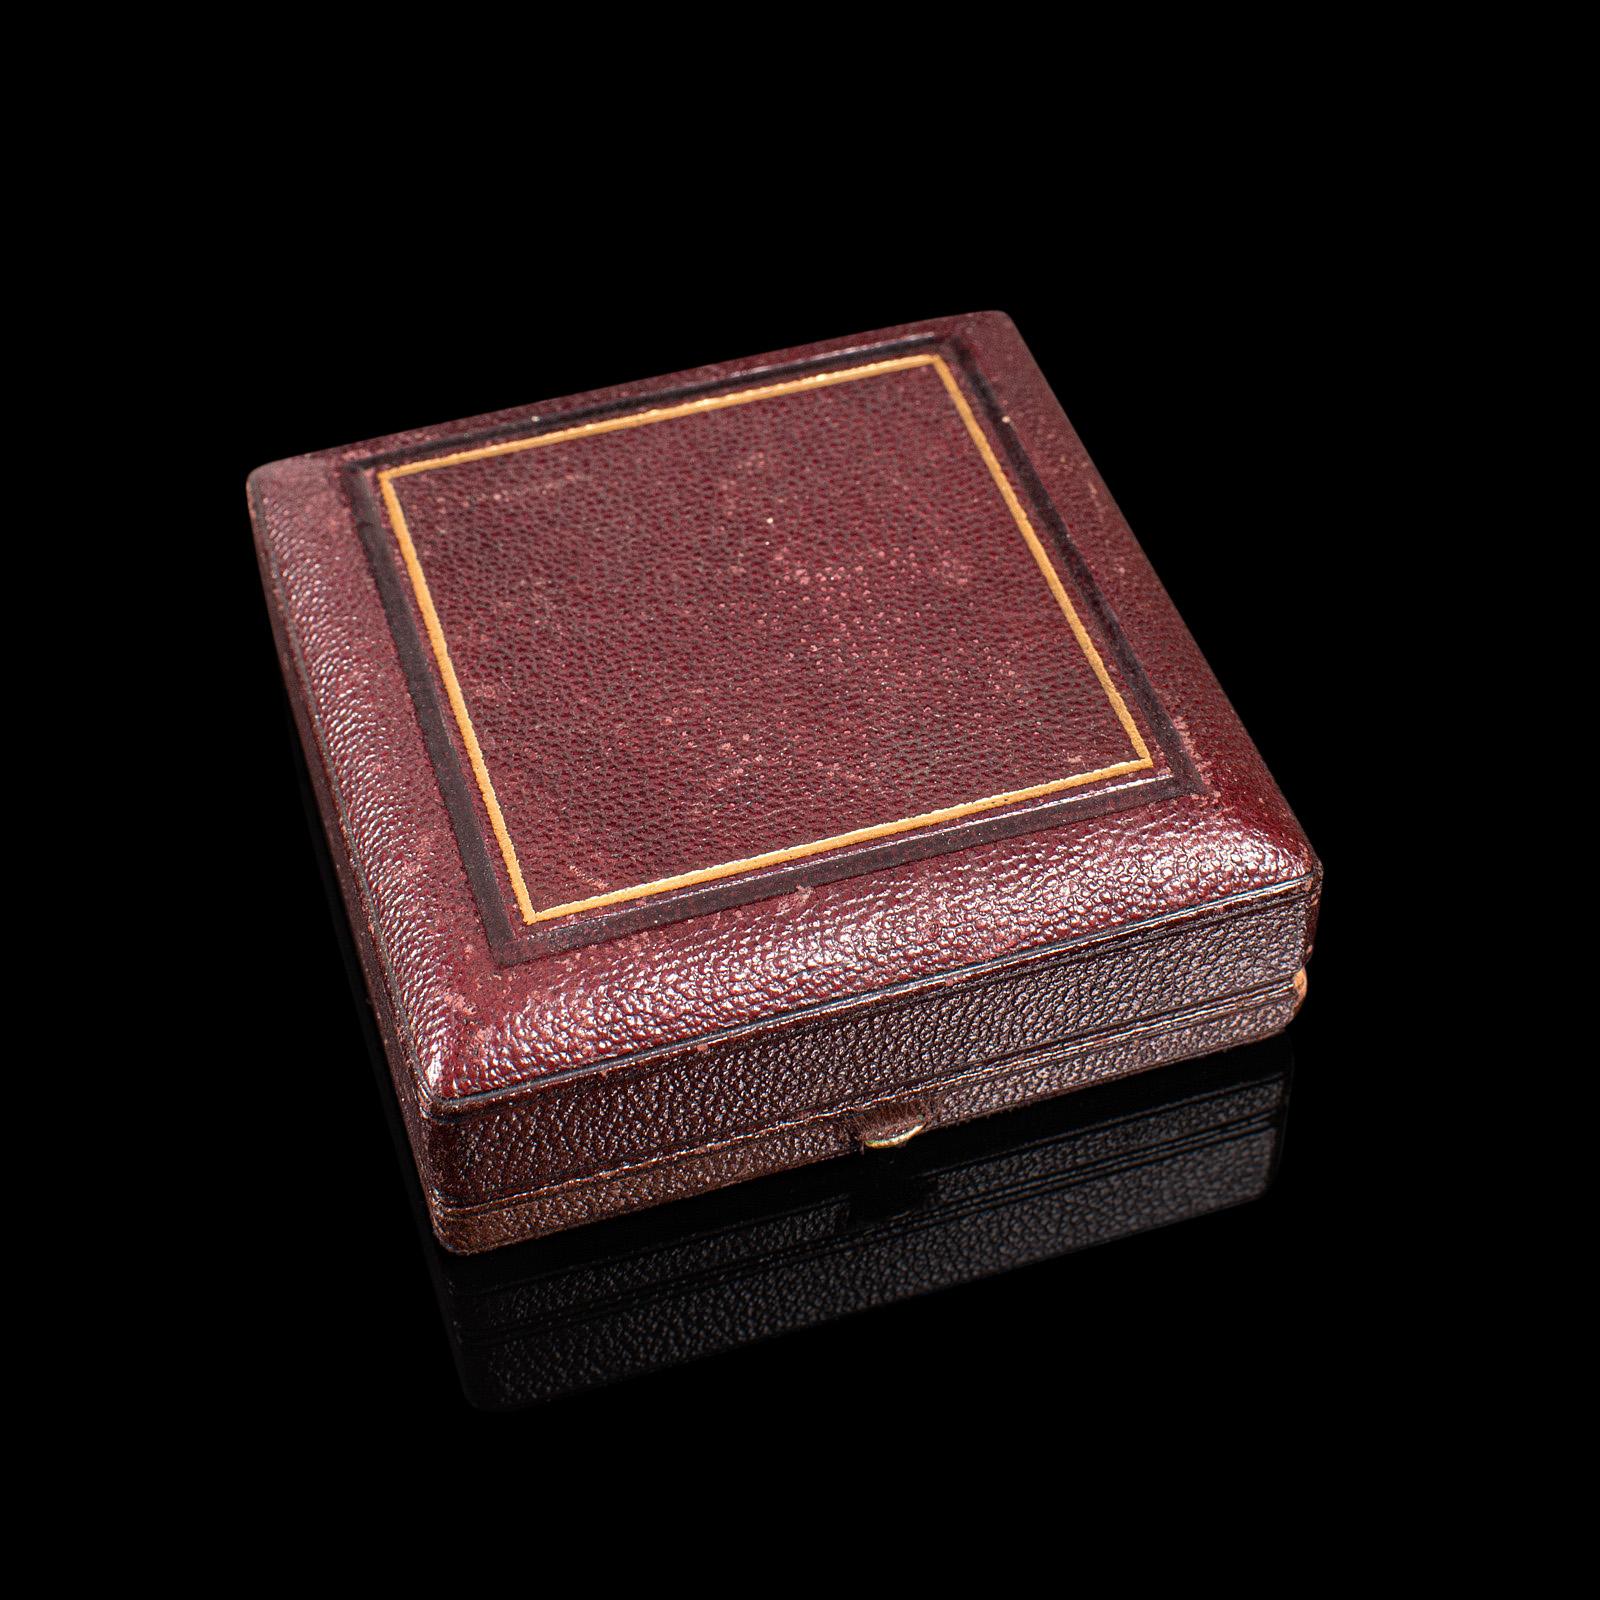 Dies ist eine antike Brosche und Schal-Clip-Set. Ein schottisches, silbernes Schmuck- oder Accessoire-Set aus der späten viktorianischen Zeit, ca. 1890.

Wunderschönes Set aus antiken schottischen Silberstücken in einer Schachtel
Mit